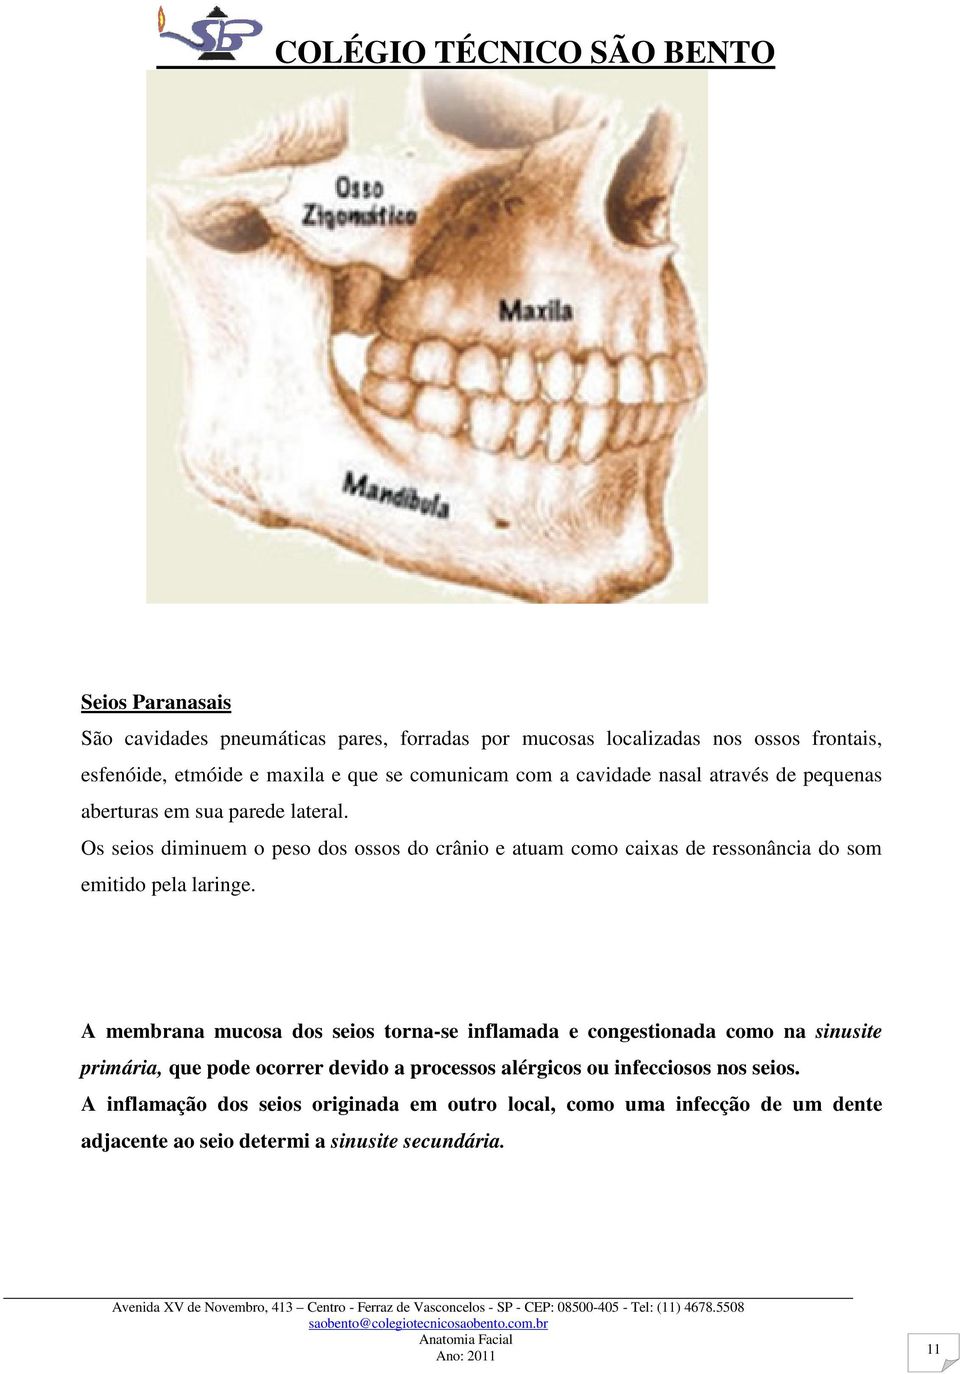 Os seios diminuem o peso dos ossos do crânio e atuam como caixas de ressonância do som emitido pela laringe.